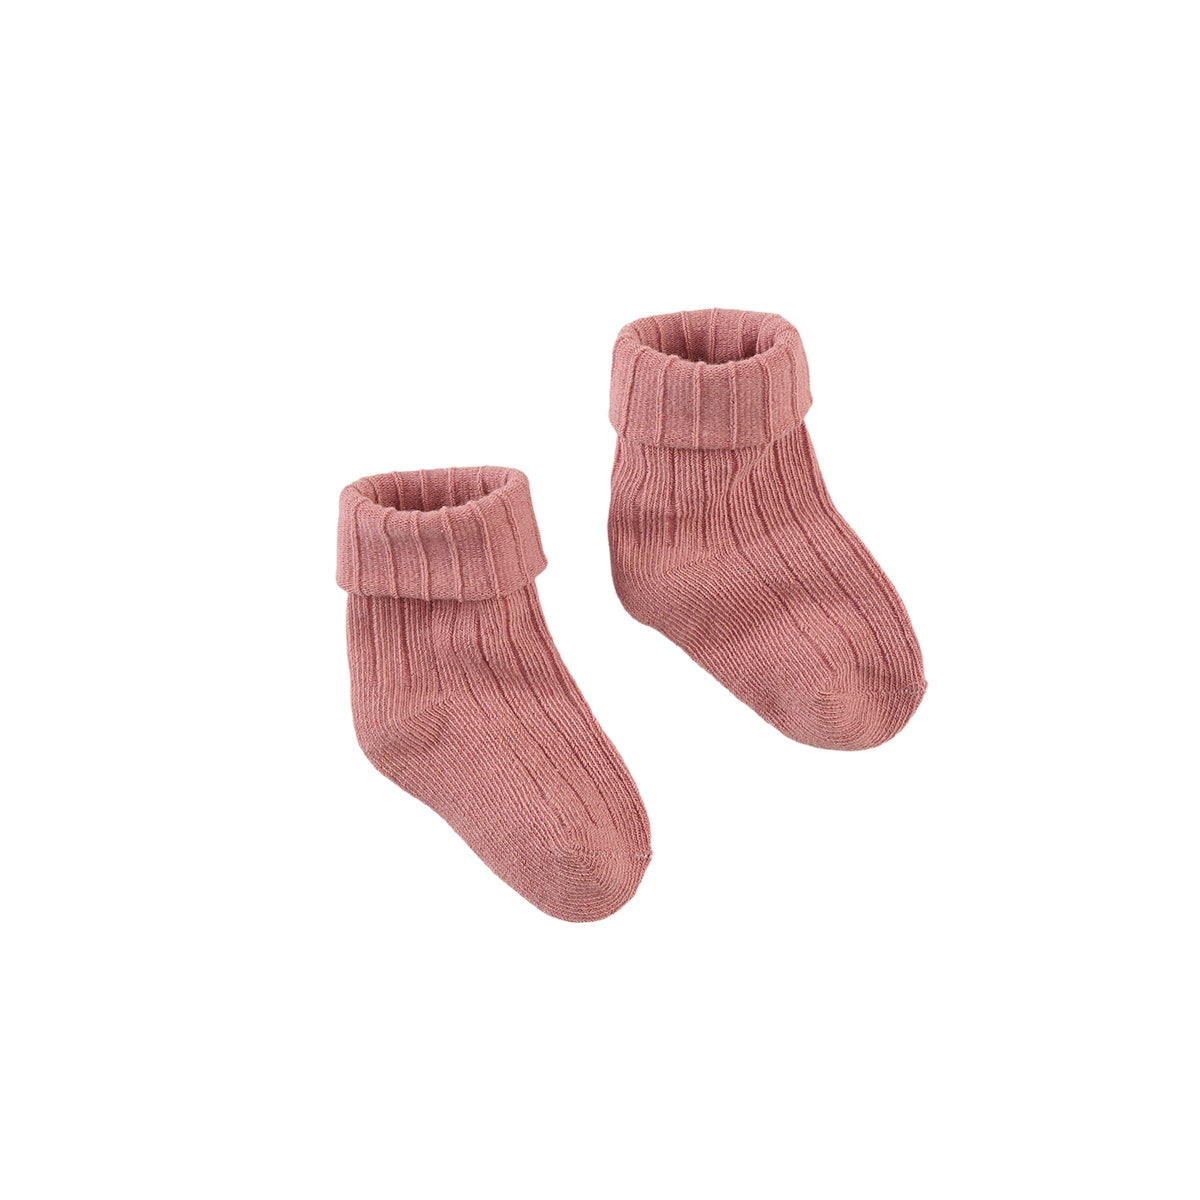 Z8 Newborn Socks Jannu